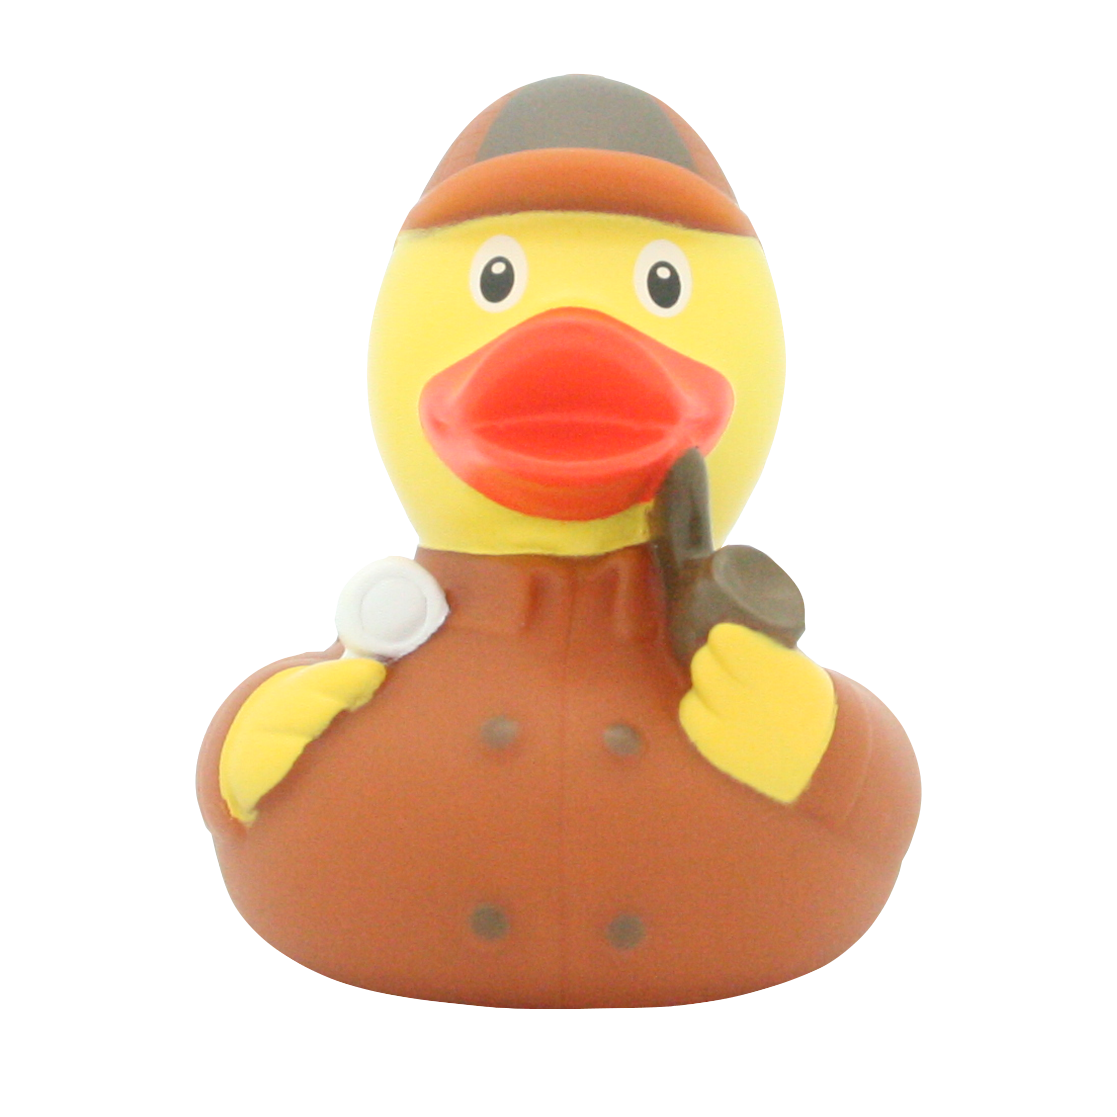 Detective duck